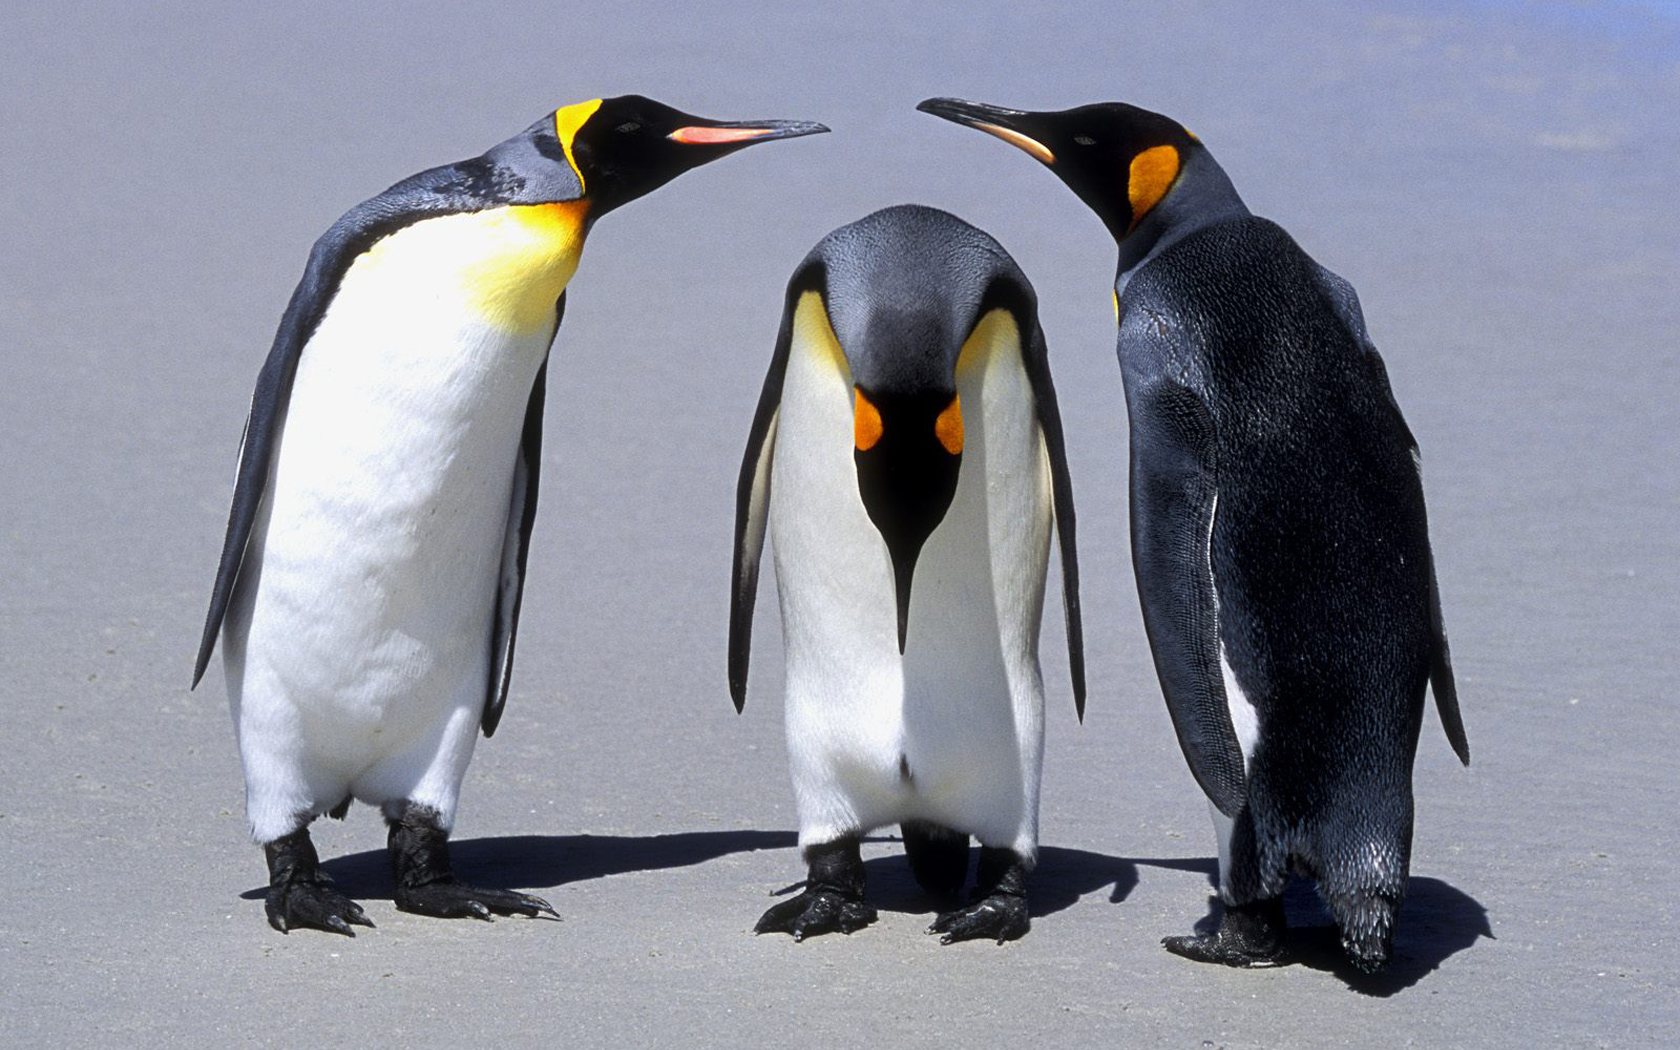 壁纸1680x1050 Penguins Falkland Islands 福克兰群岛企鹅图片壁纸壁纸 大尺寸世界各地动物壁纸精选 第一辑壁纸 大尺寸世界各地动物壁纸精选 第一辑图片 大尺寸世界各地动物壁纸精选 第一辑素材 动物壁纸 动物图库 动物图片素材桌面壁纸